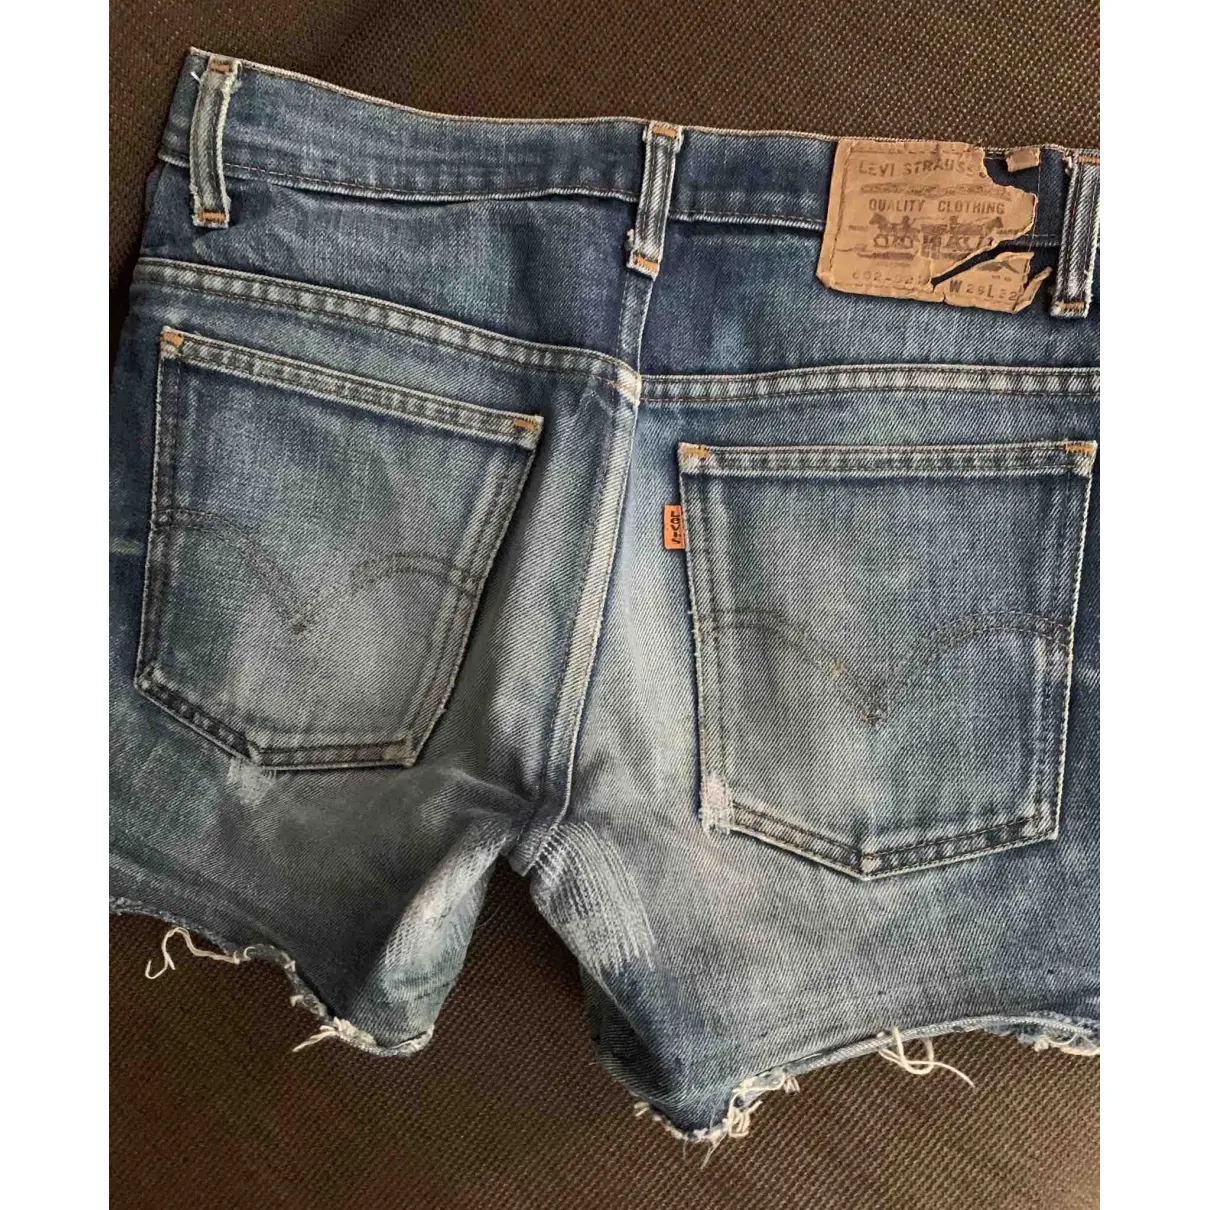 Blue Denim - Jeans Shorts Levi's Vintage Clothing